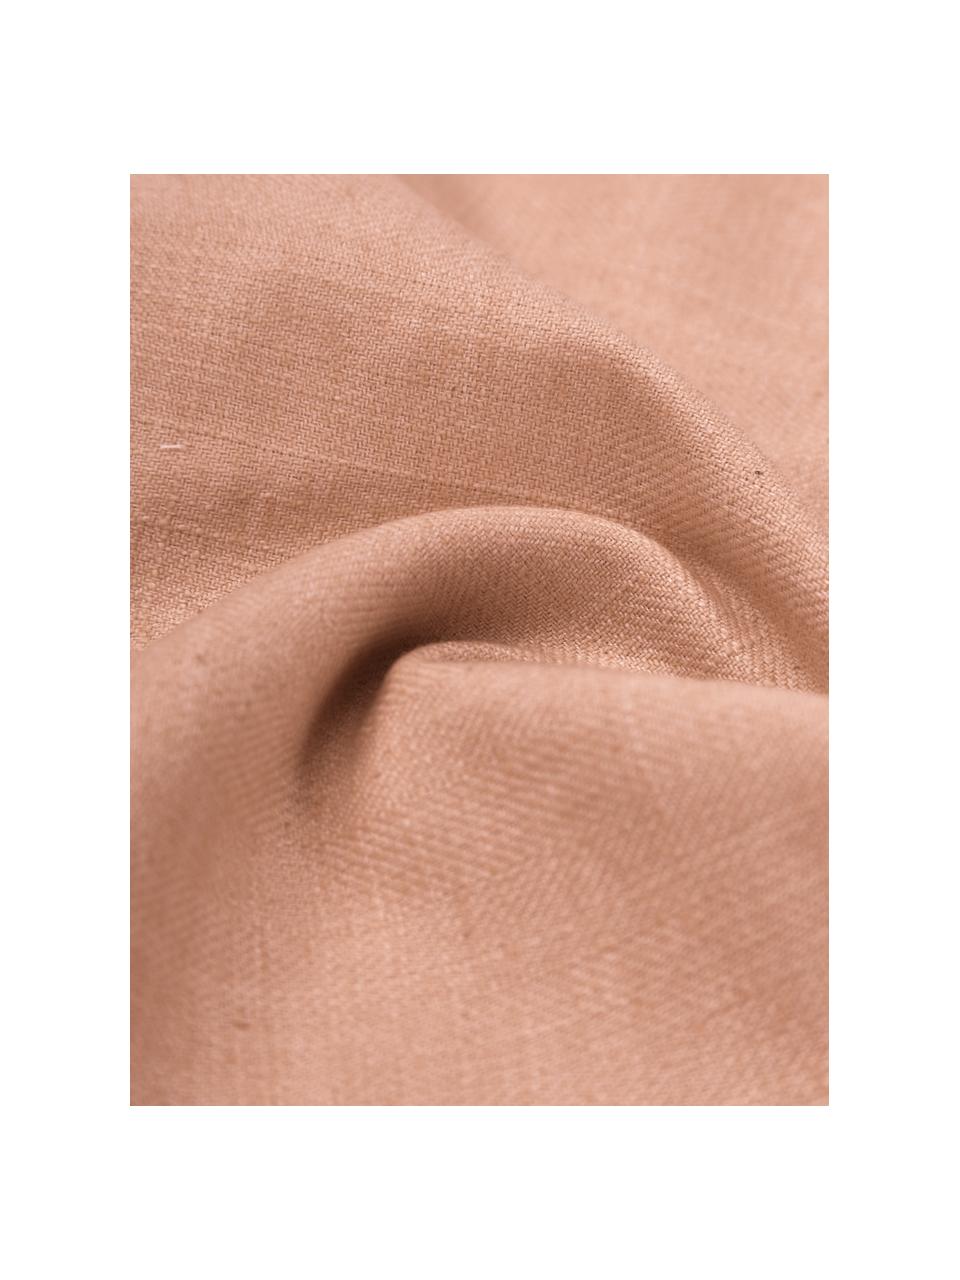 Kissenhülle Camille in Apricot mit Rüschen, 60% Polyester, 25% Baumwolle, 15% Leinen, Aprikose, B 45 x L 45 cm